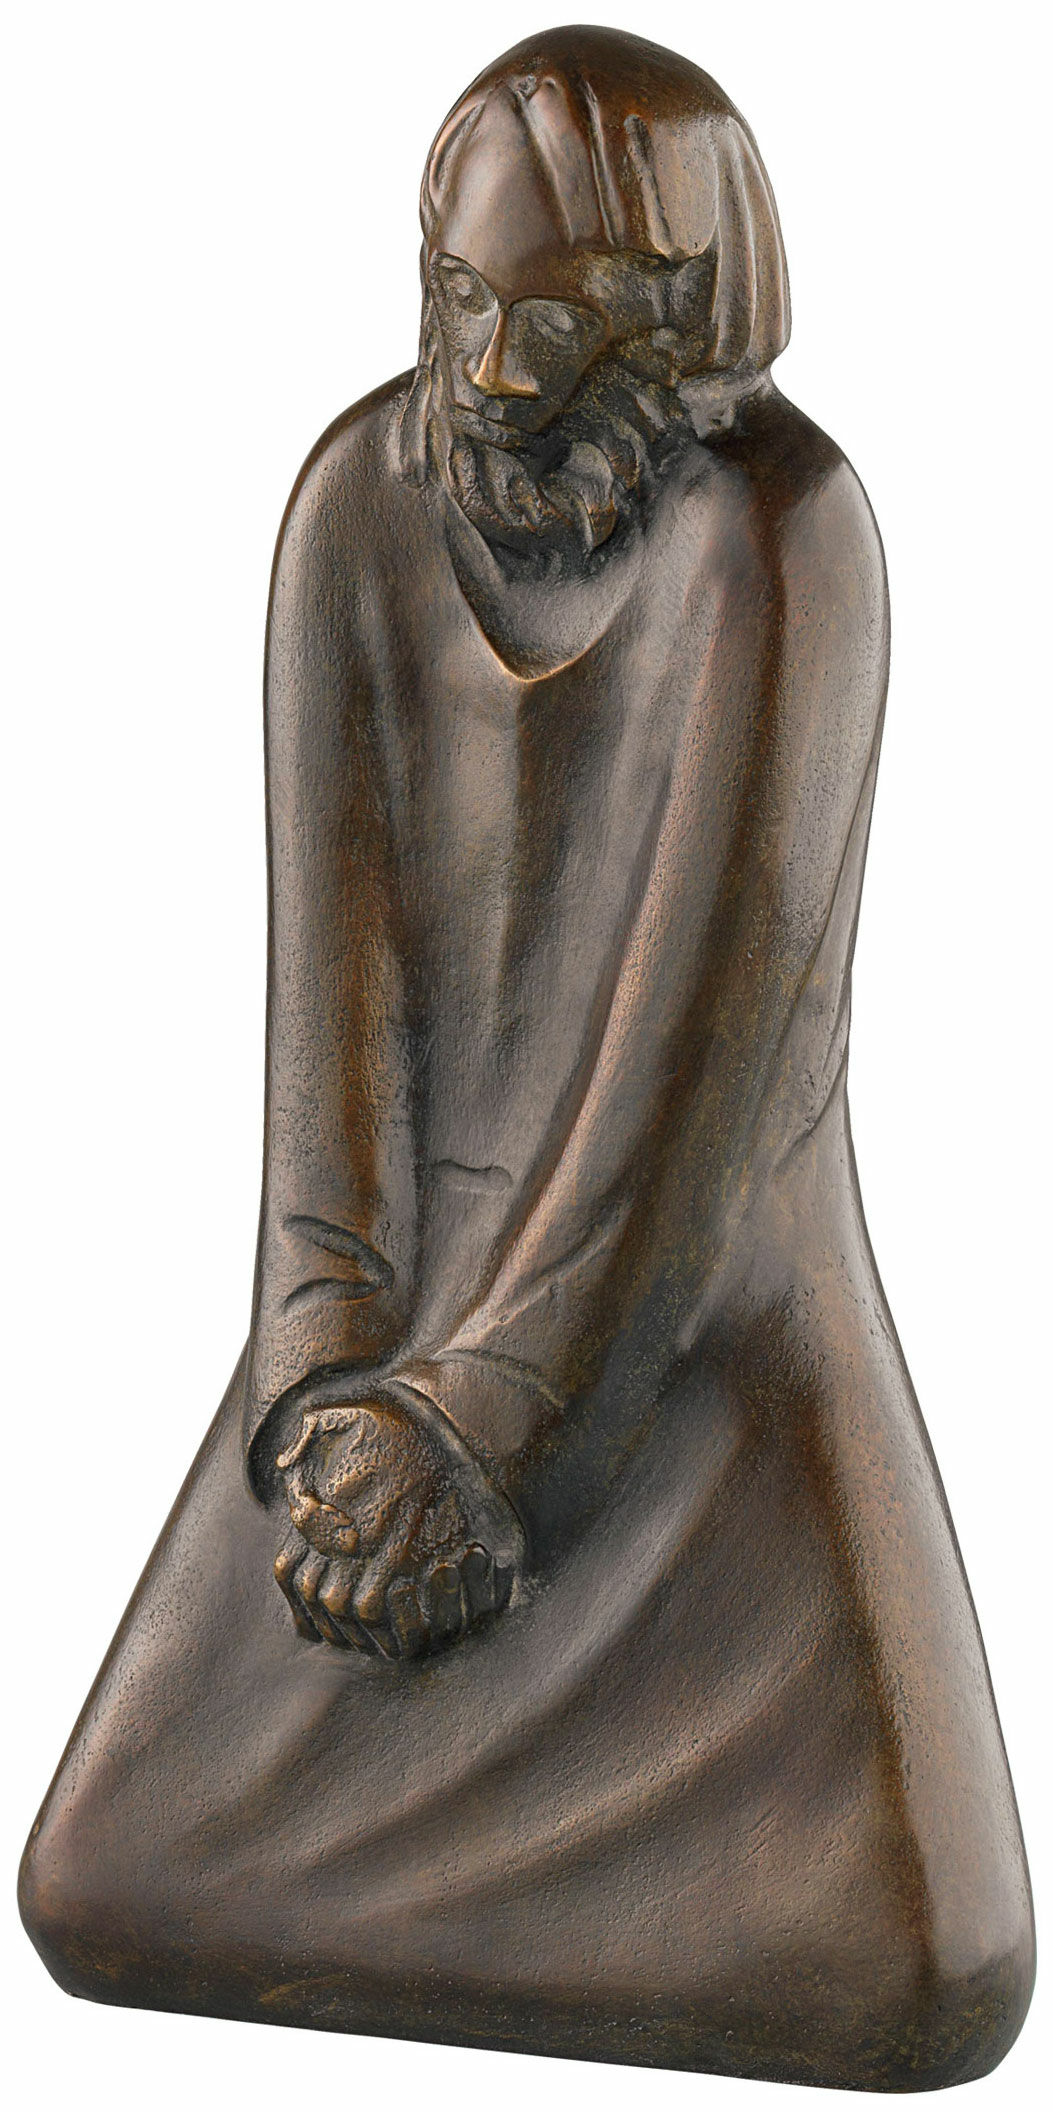 Skulptur "Der Zweifler" (1931), Reduktion in Bronze von Ernst Barlach